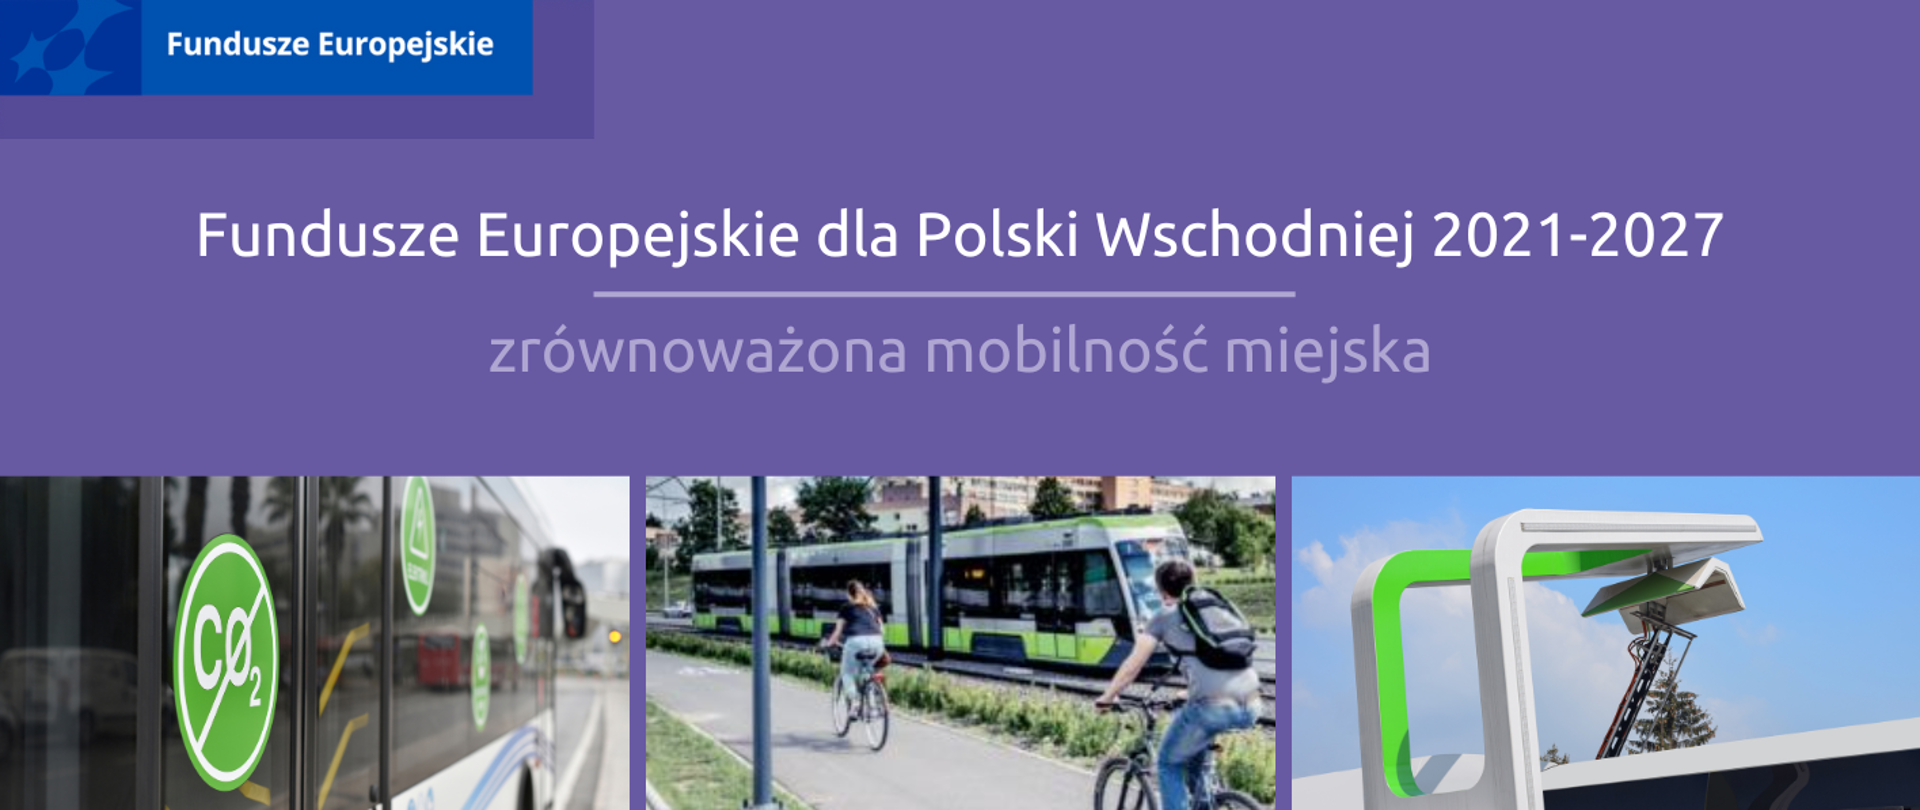 Polska Wschodnia stawia na zrównoważoną mobilność miejską. Znamy listę projektów z pierwszego naboru.